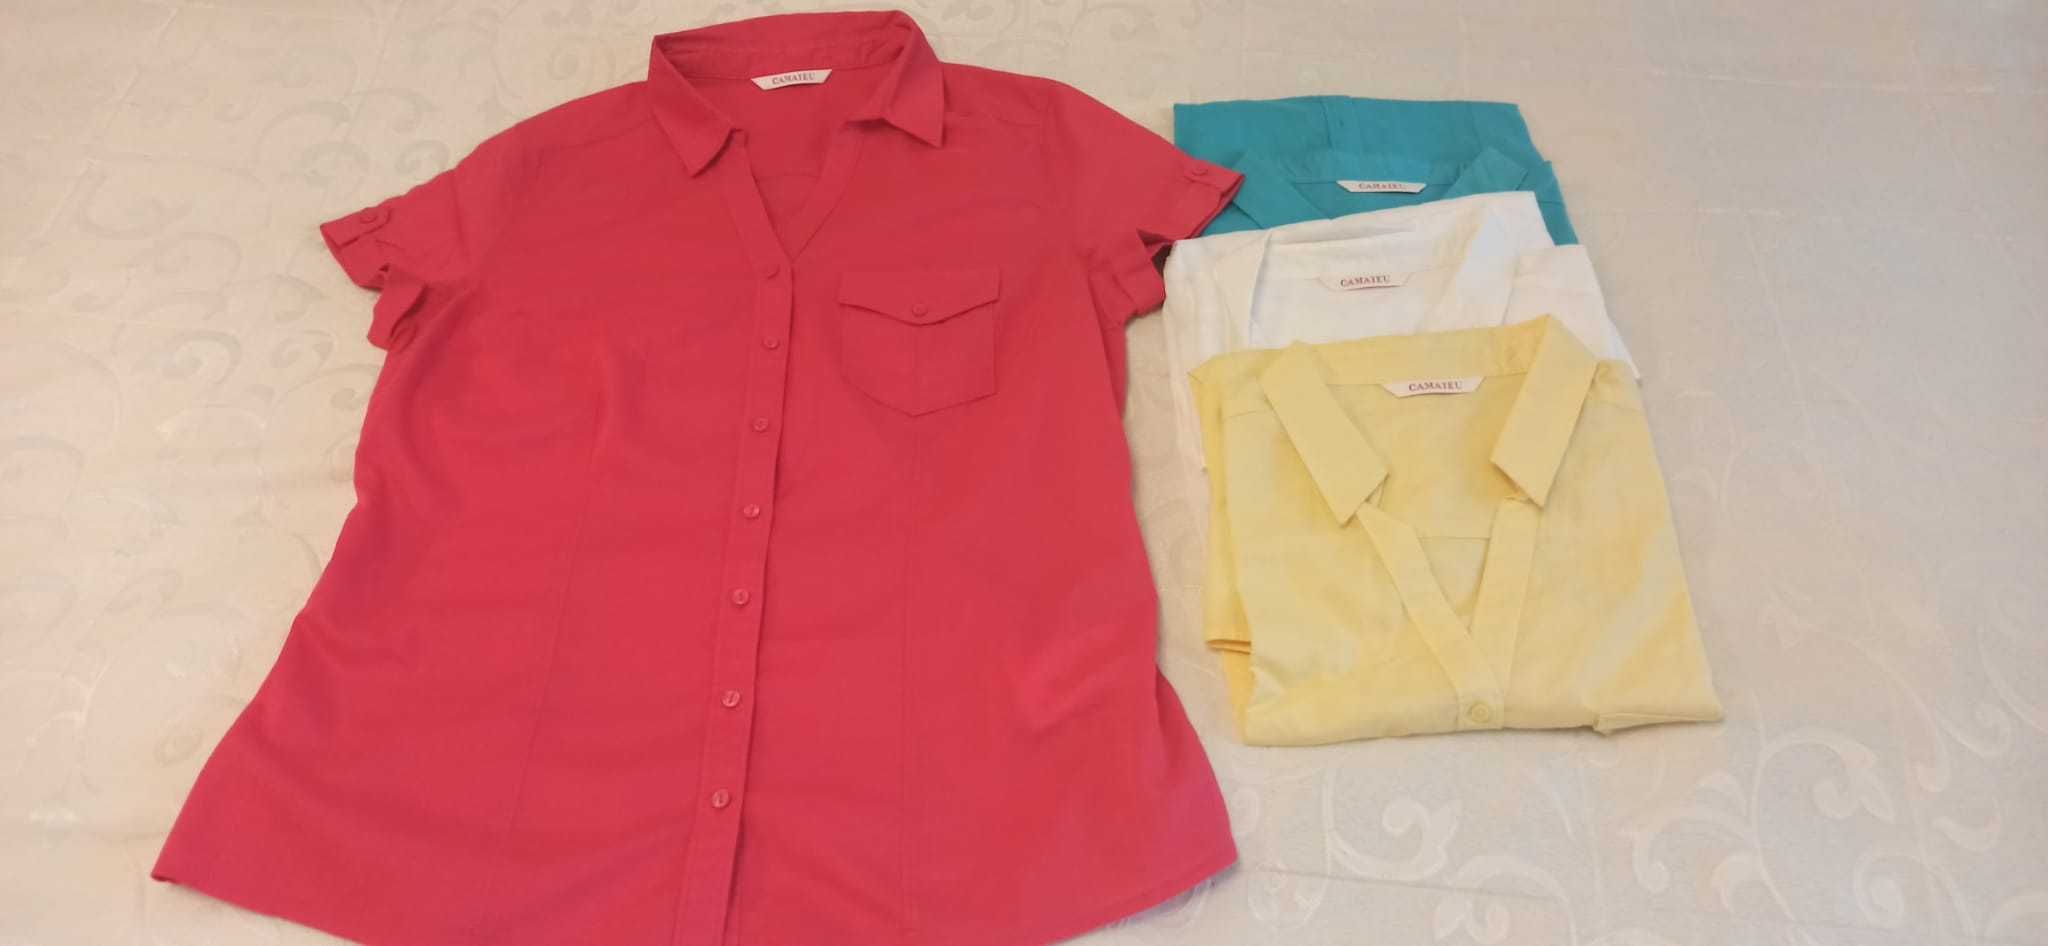 Bluze pentru femei , culori superbe la un pret avantajos